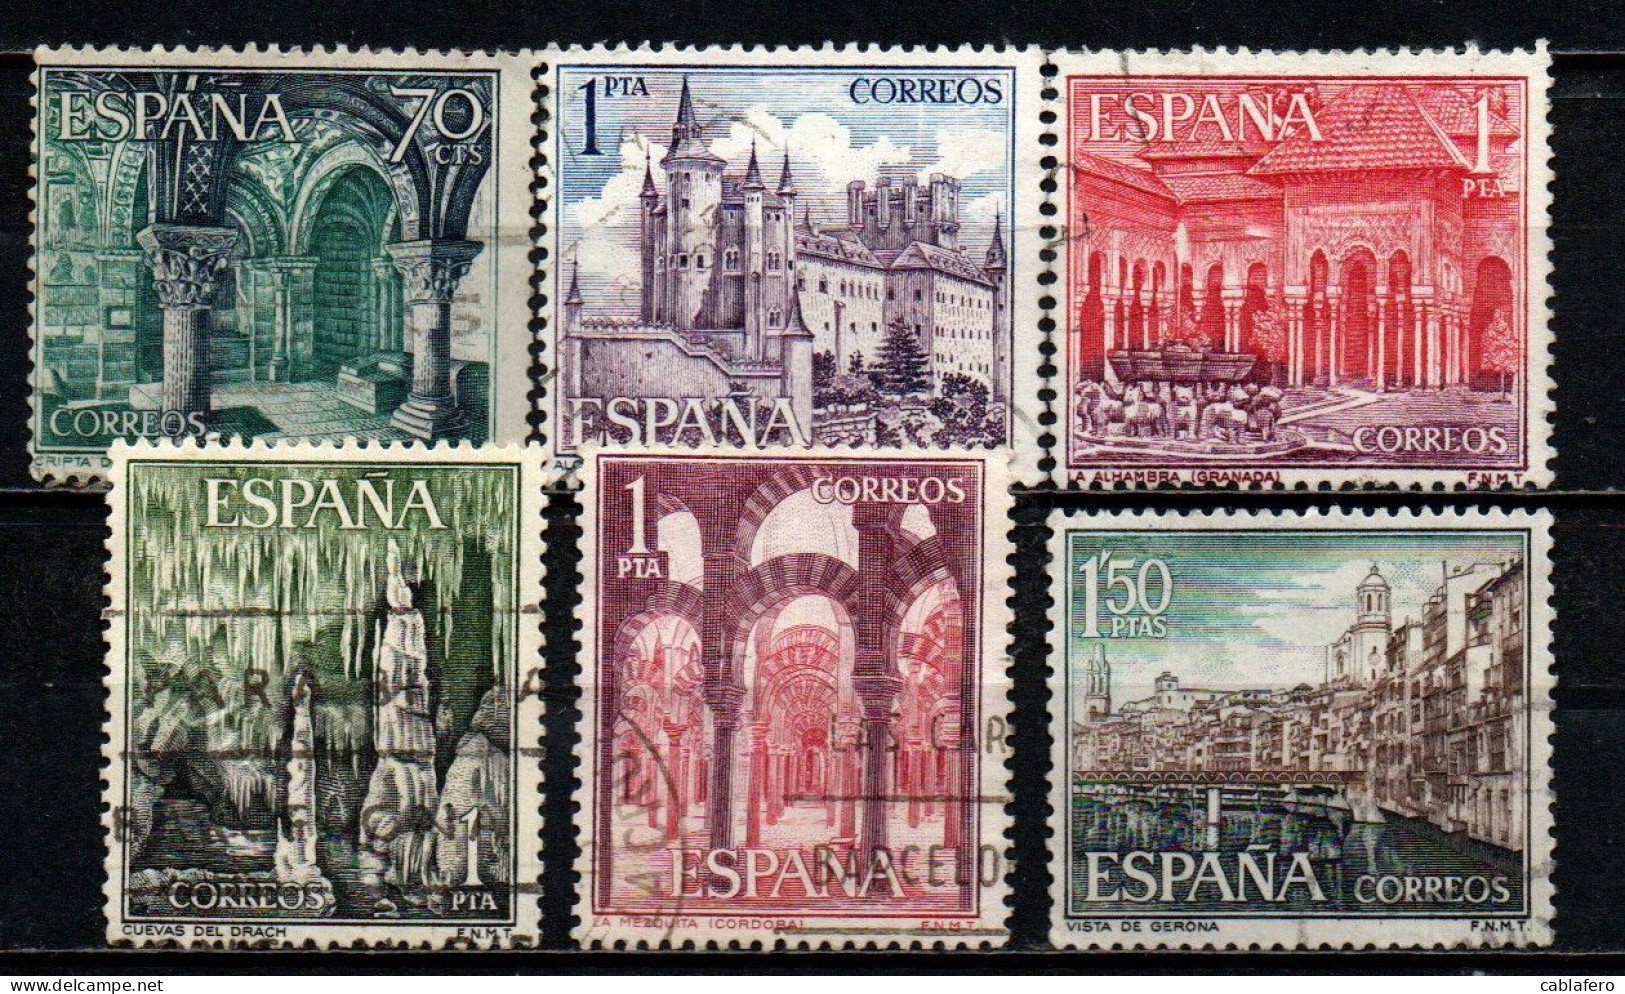 SPAGNA - 1964 - IL TURISMO IN SPAGNA: LEON - SEGOVIA - GRANADA - CORDOVA - GERONA - USATI - Used Stamps